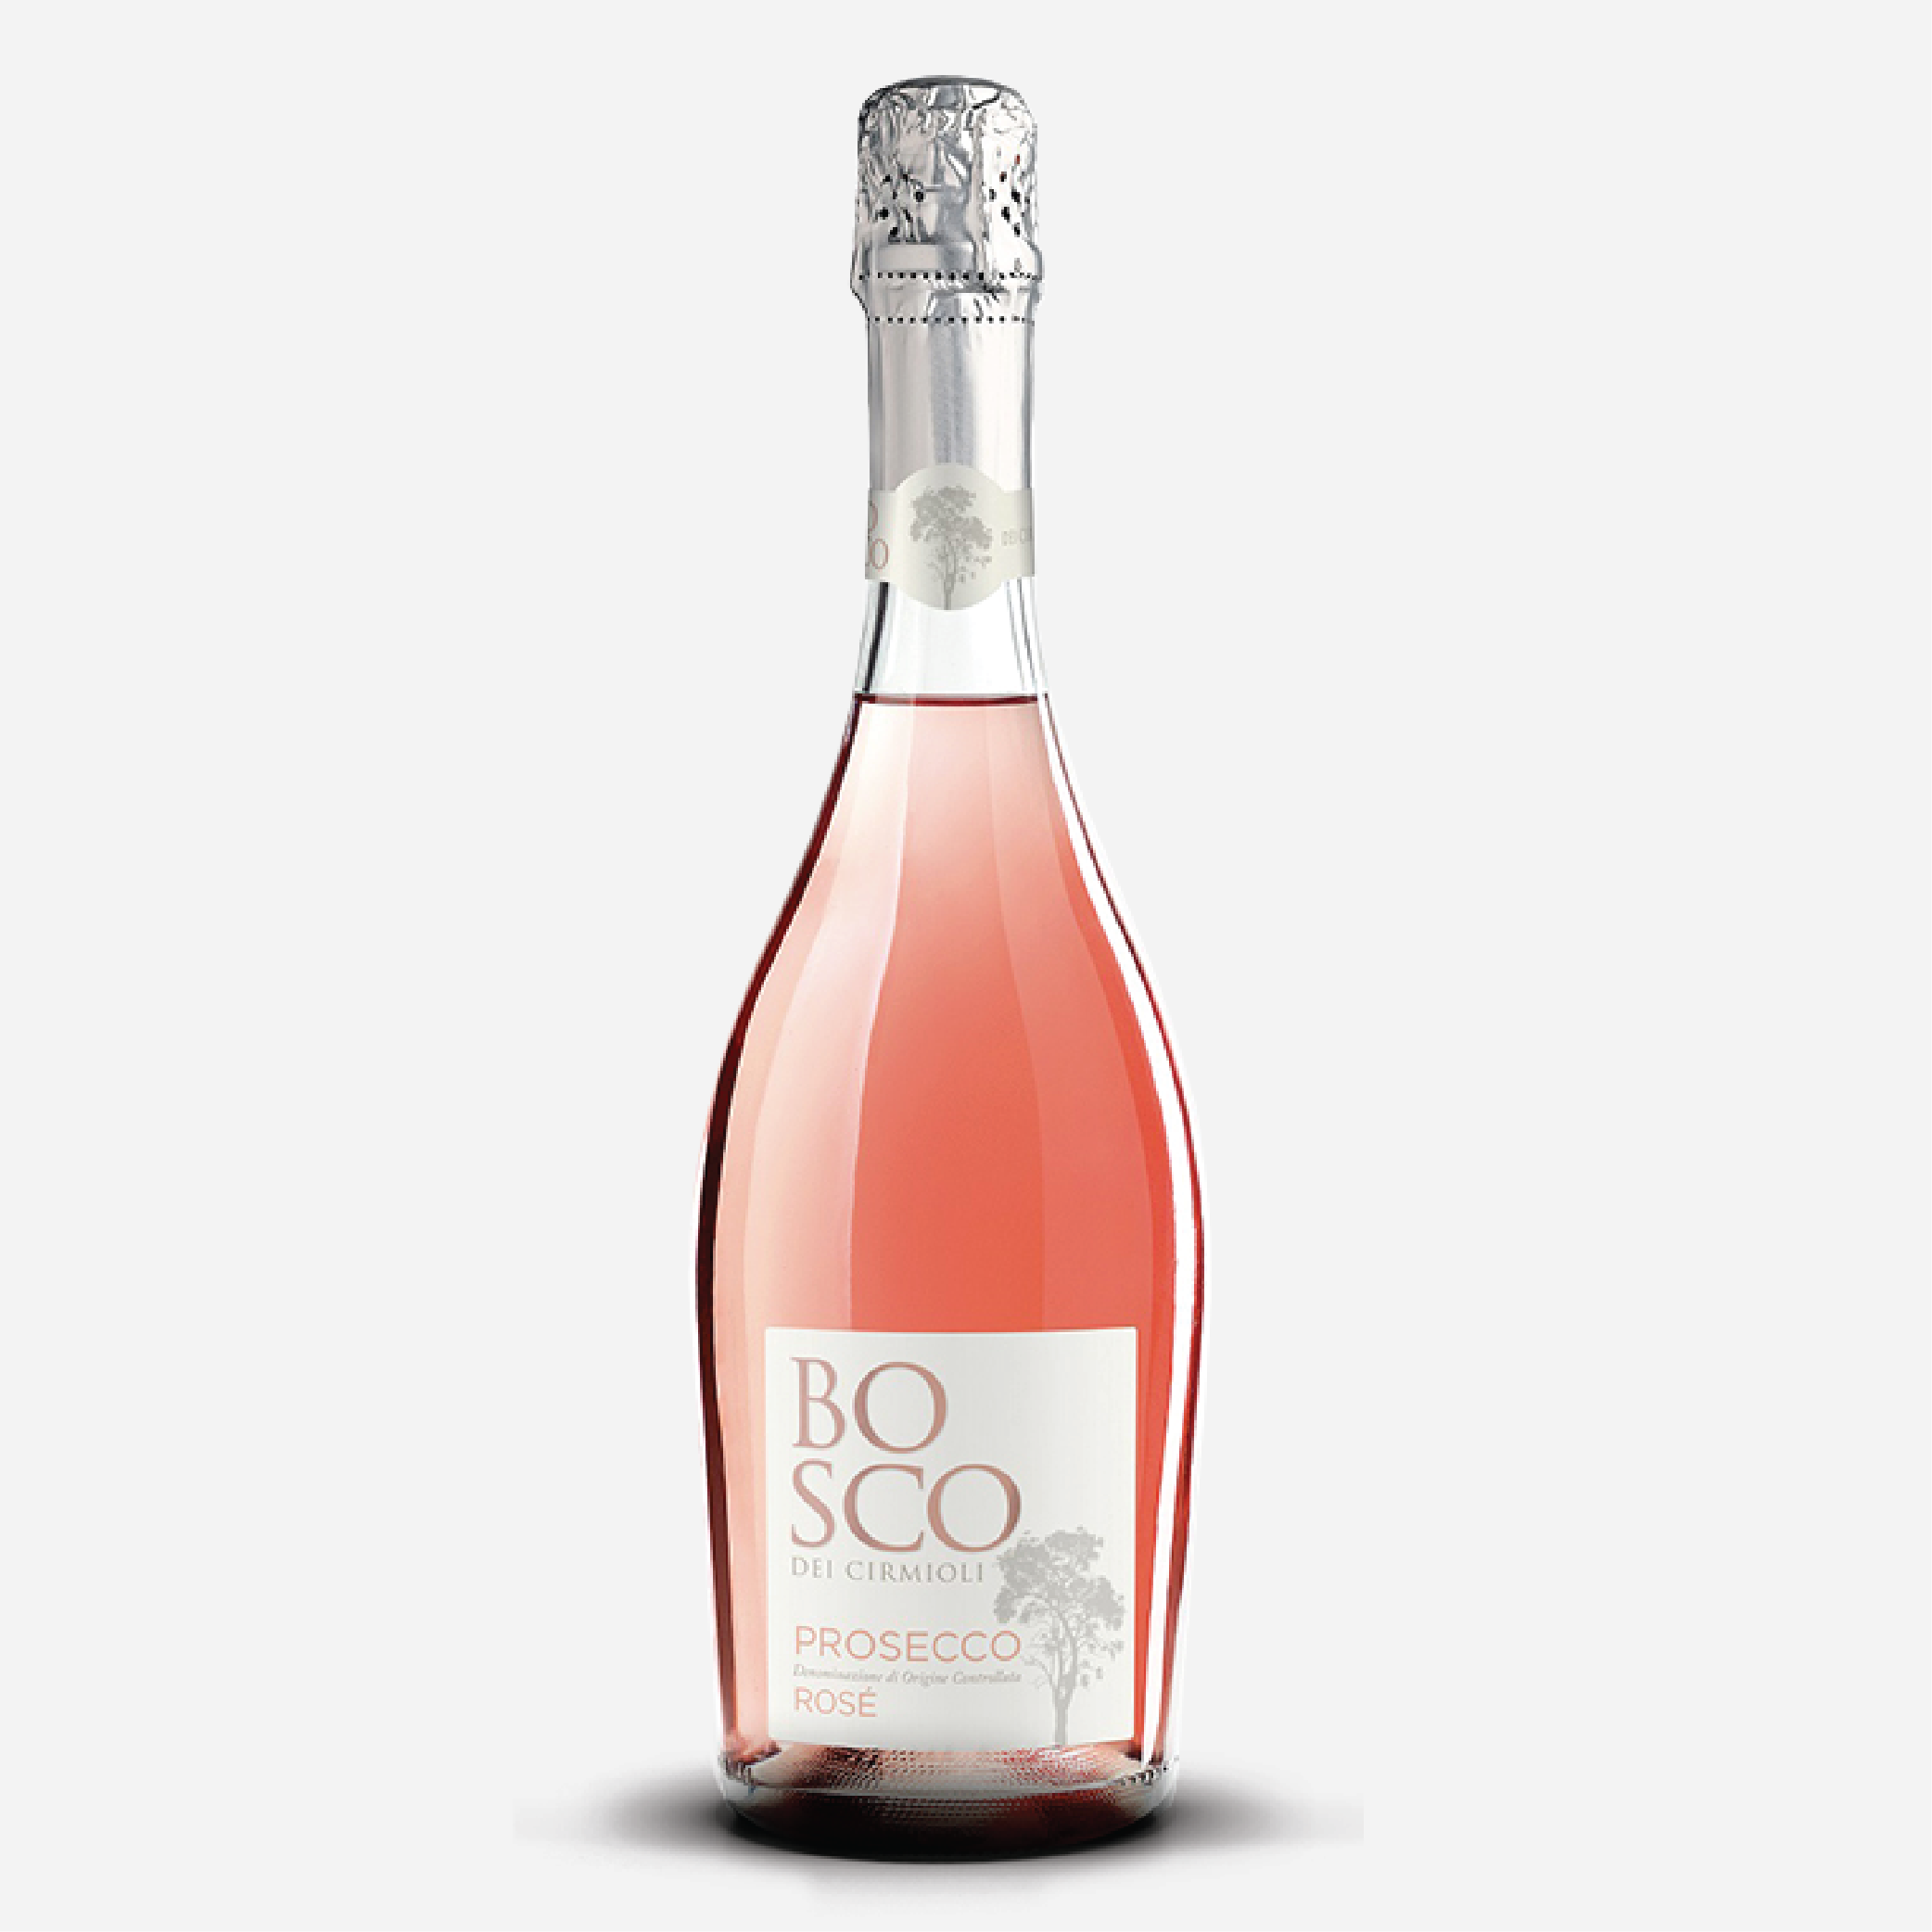 Bosco Prosecco Rose Sparkling Wine